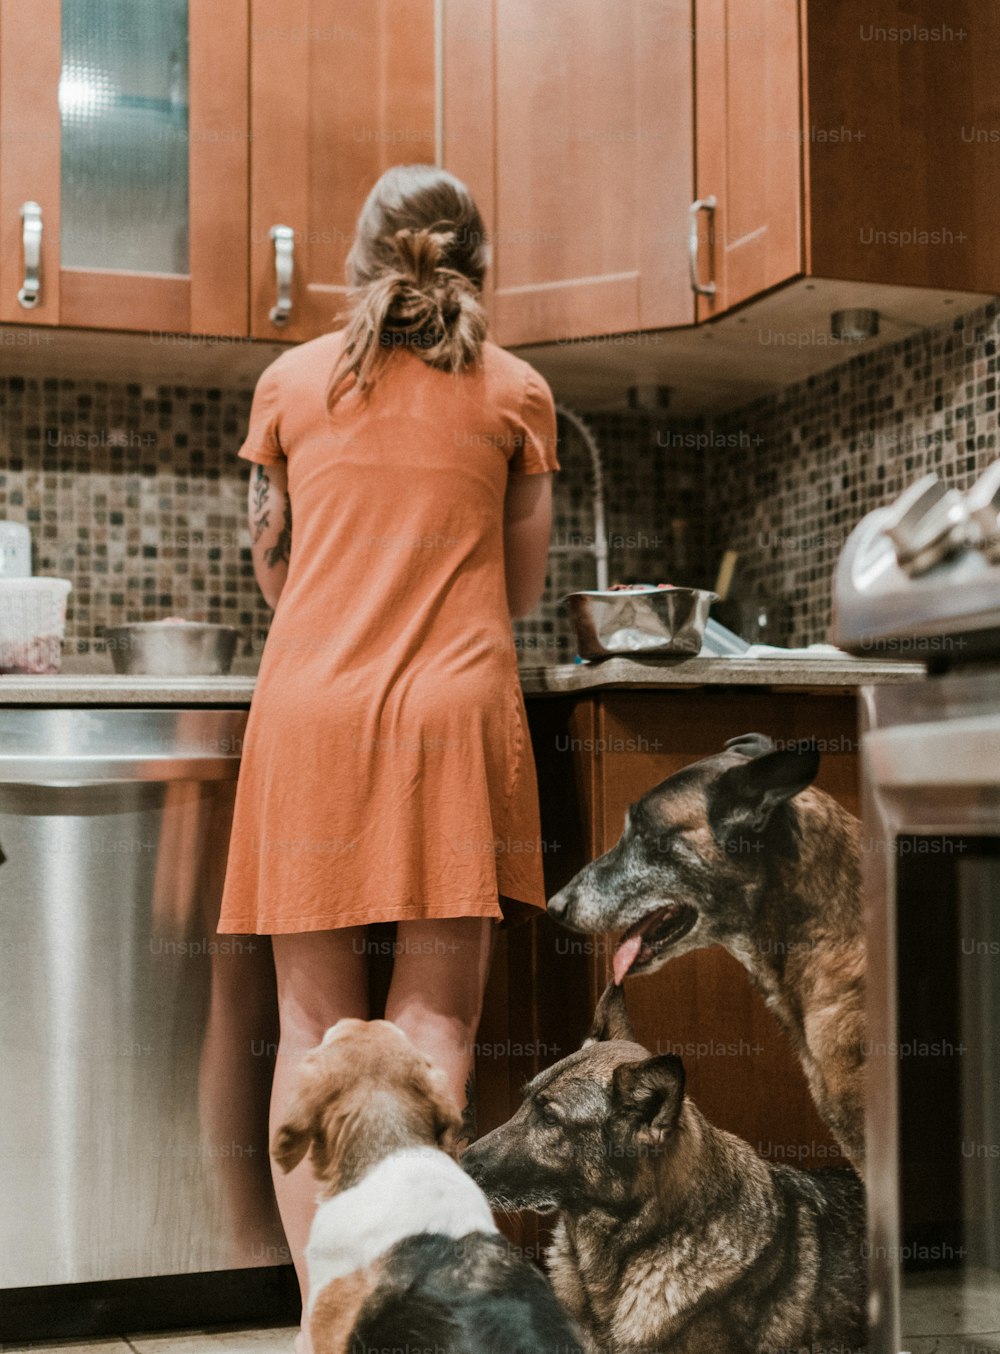 Una mujer parada en una cocina con tres perros